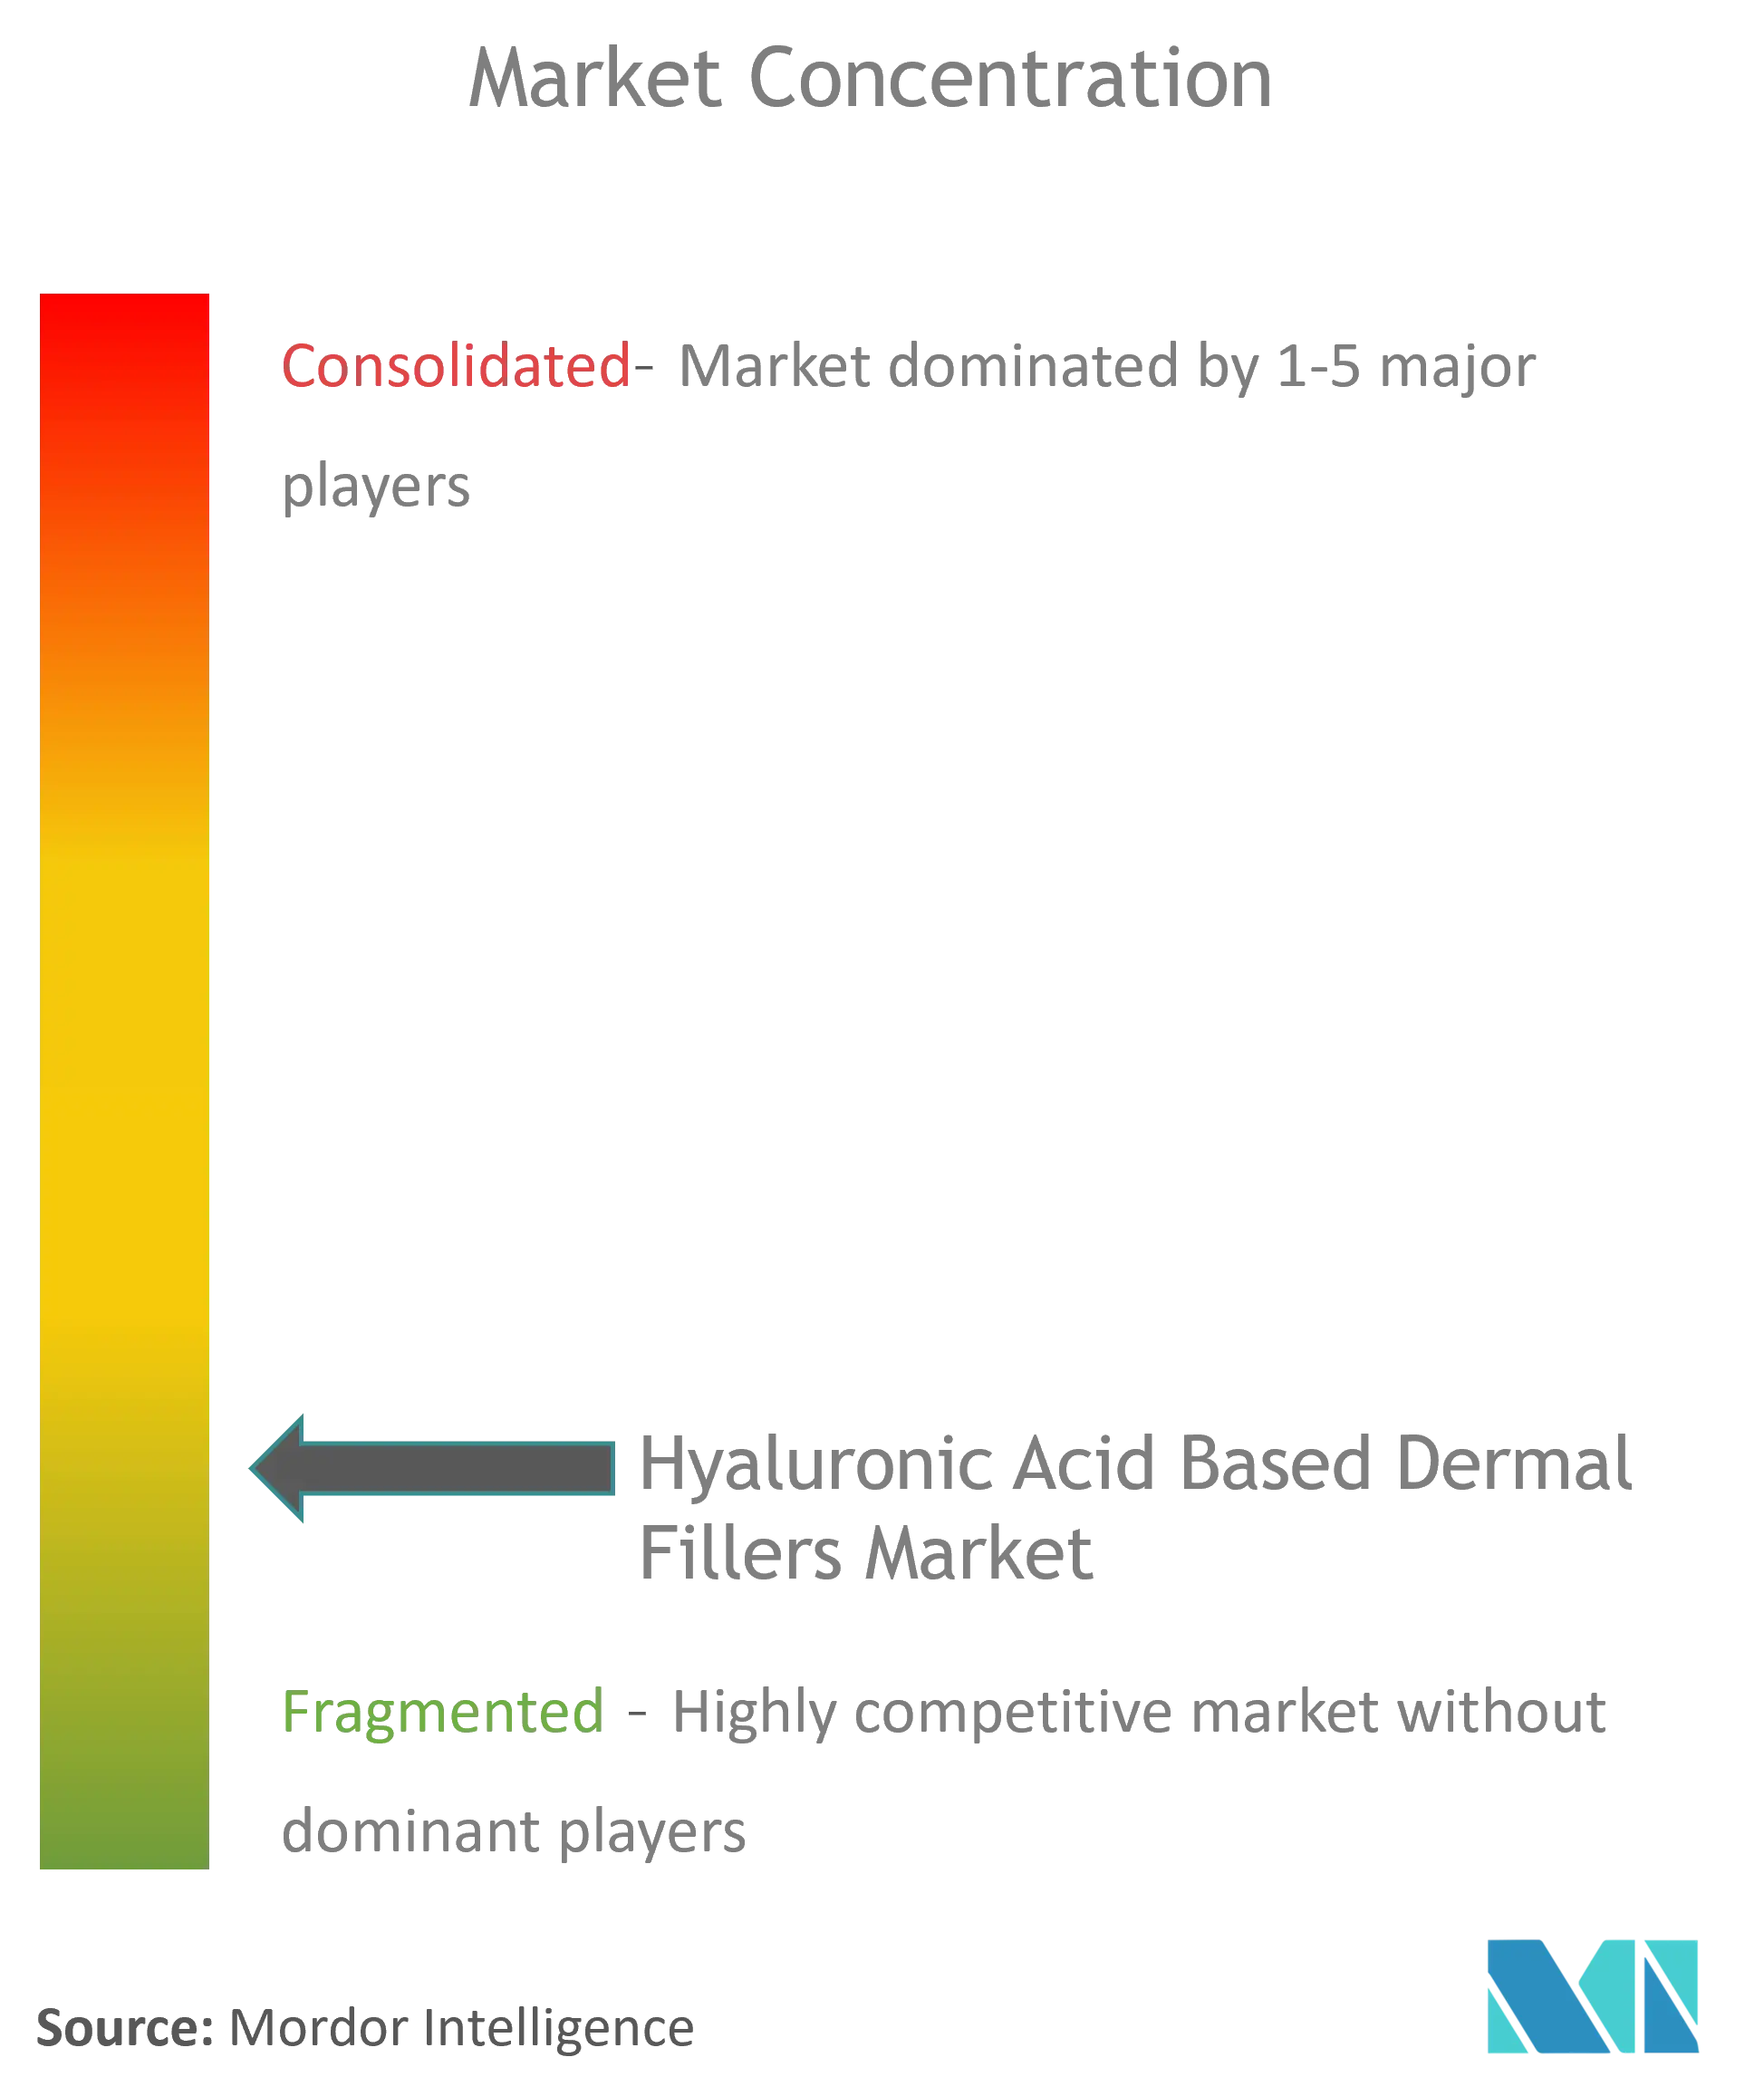 Hyaluronic Acid Based Dermal Fillers Market Concentration